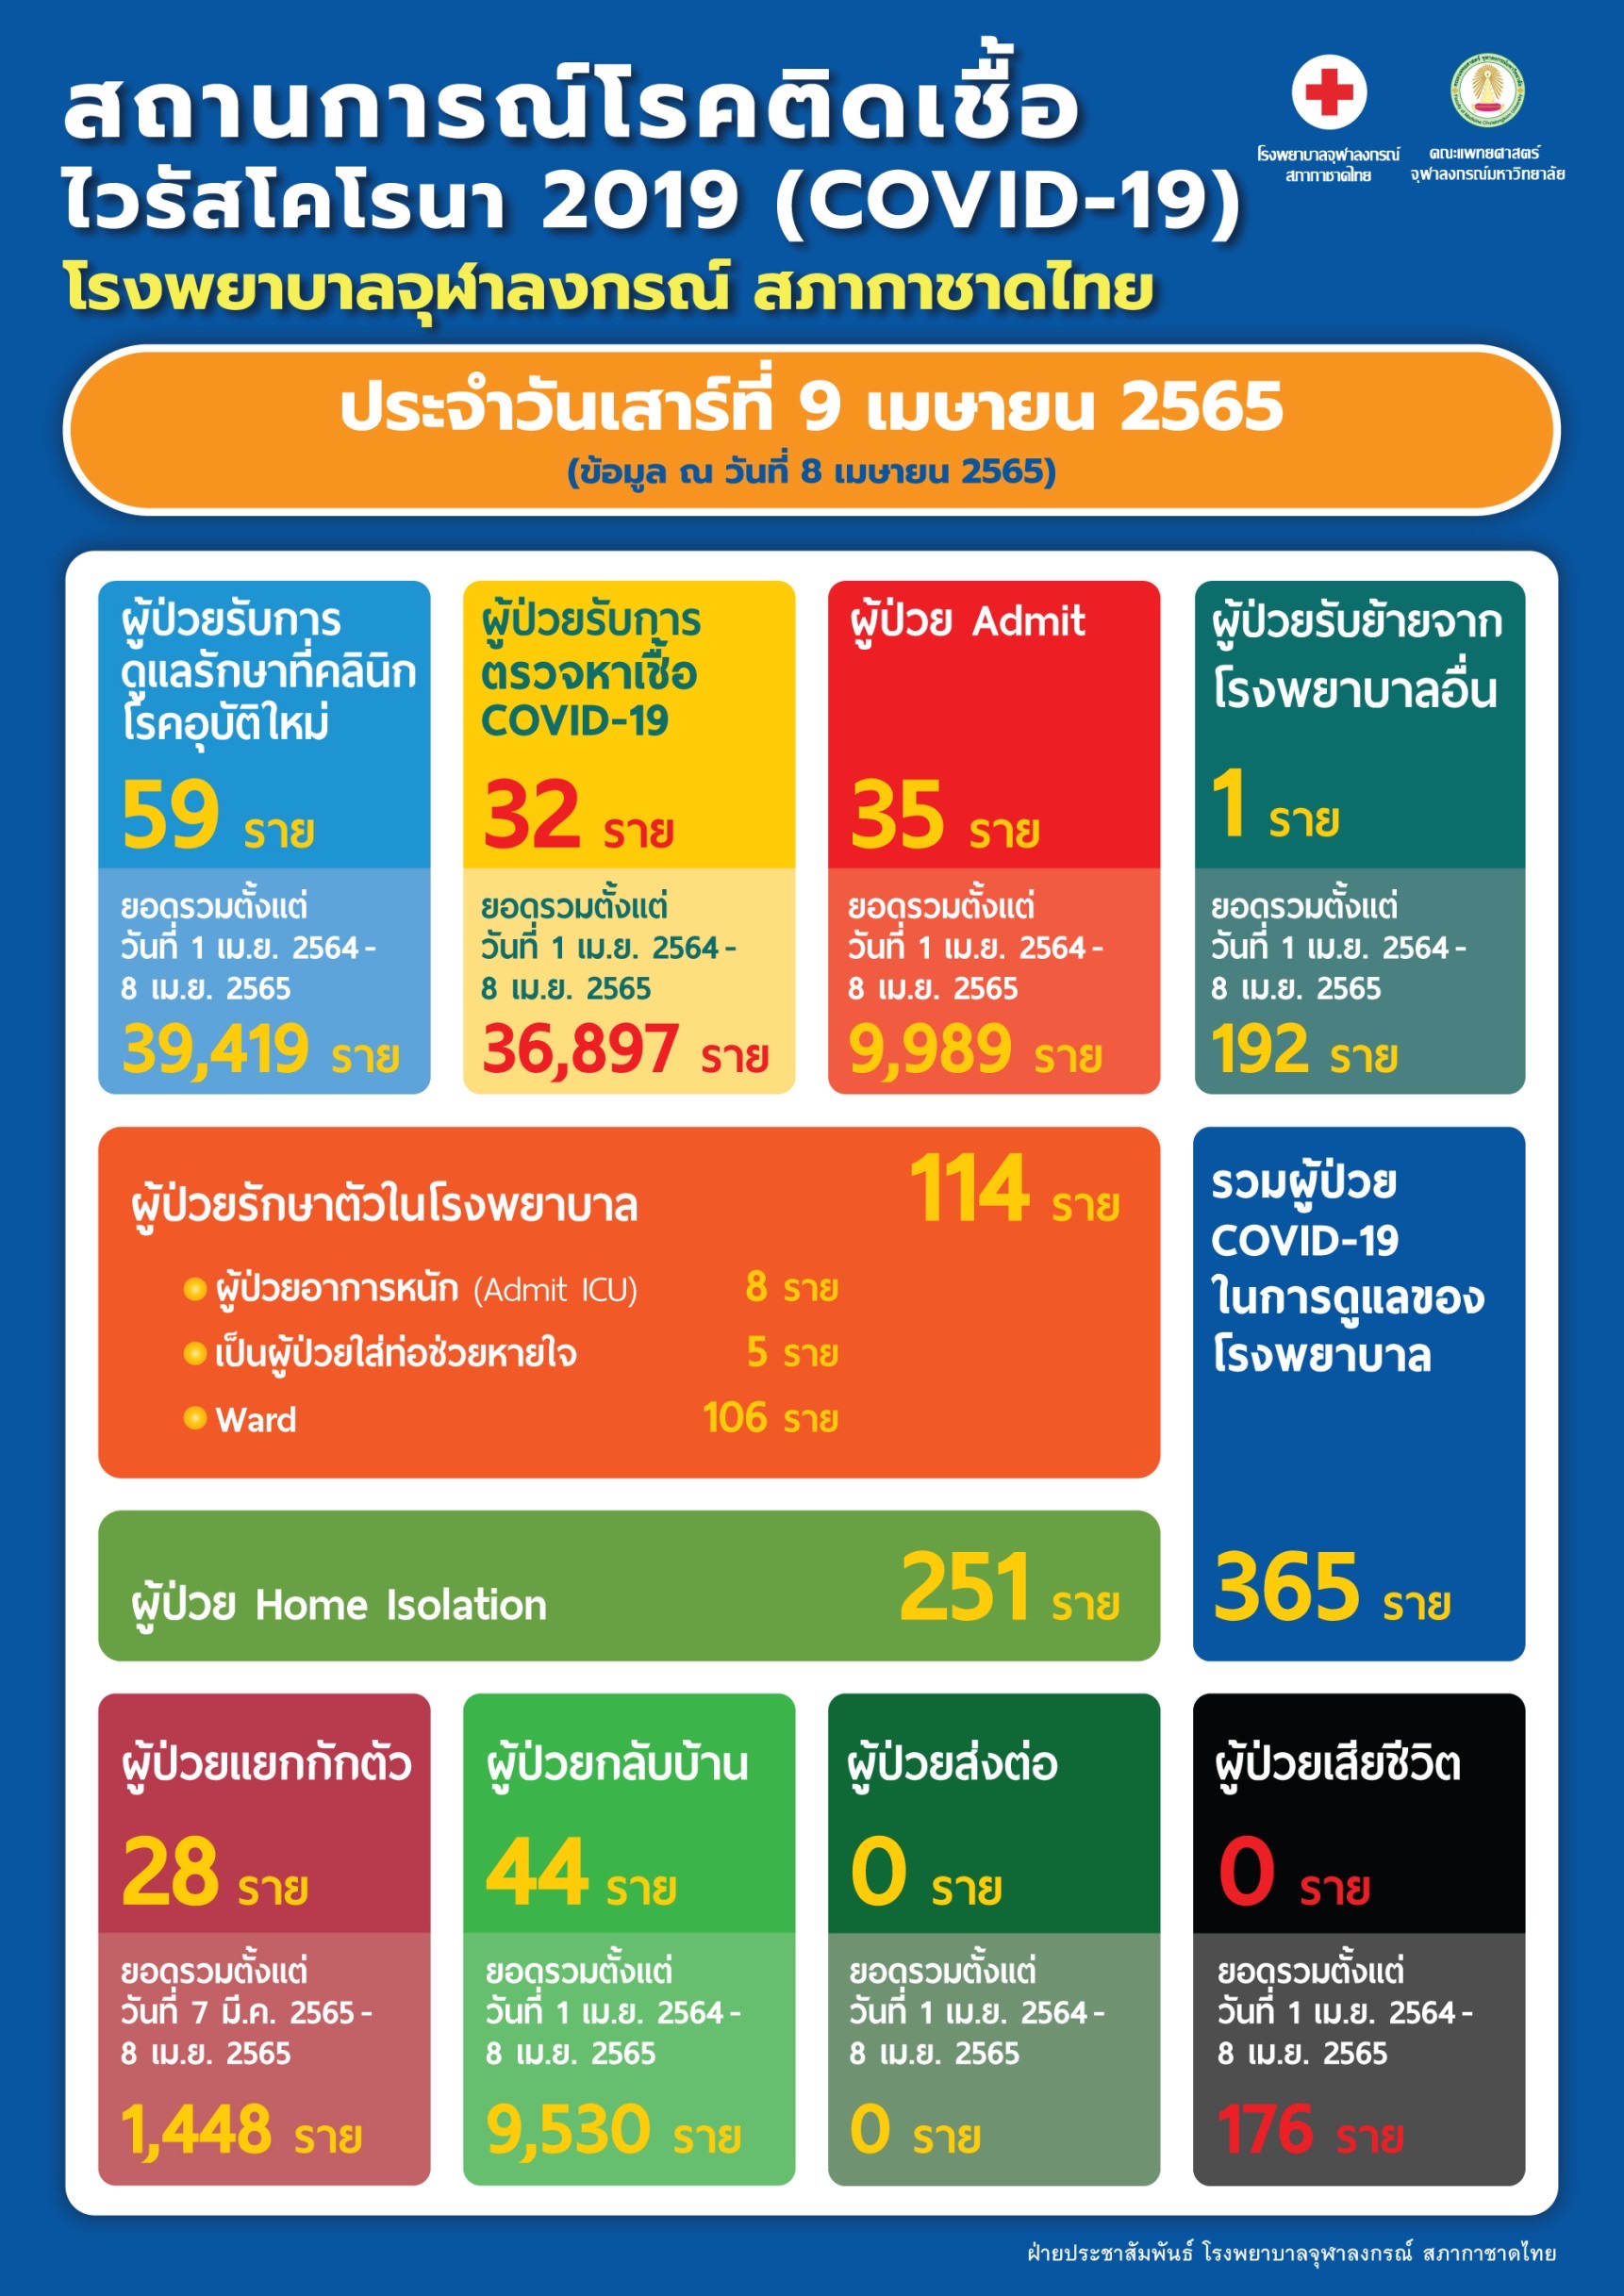 สถานการณ์โรคติดเชื้อ ไวรัสโคโรนา 2019 (COVID-19) โรงพยาบาลจุฬาลงกรณ์ สภากาชาดไทย ประจำวันเสาร์ที่ 9 เมษายน 2565